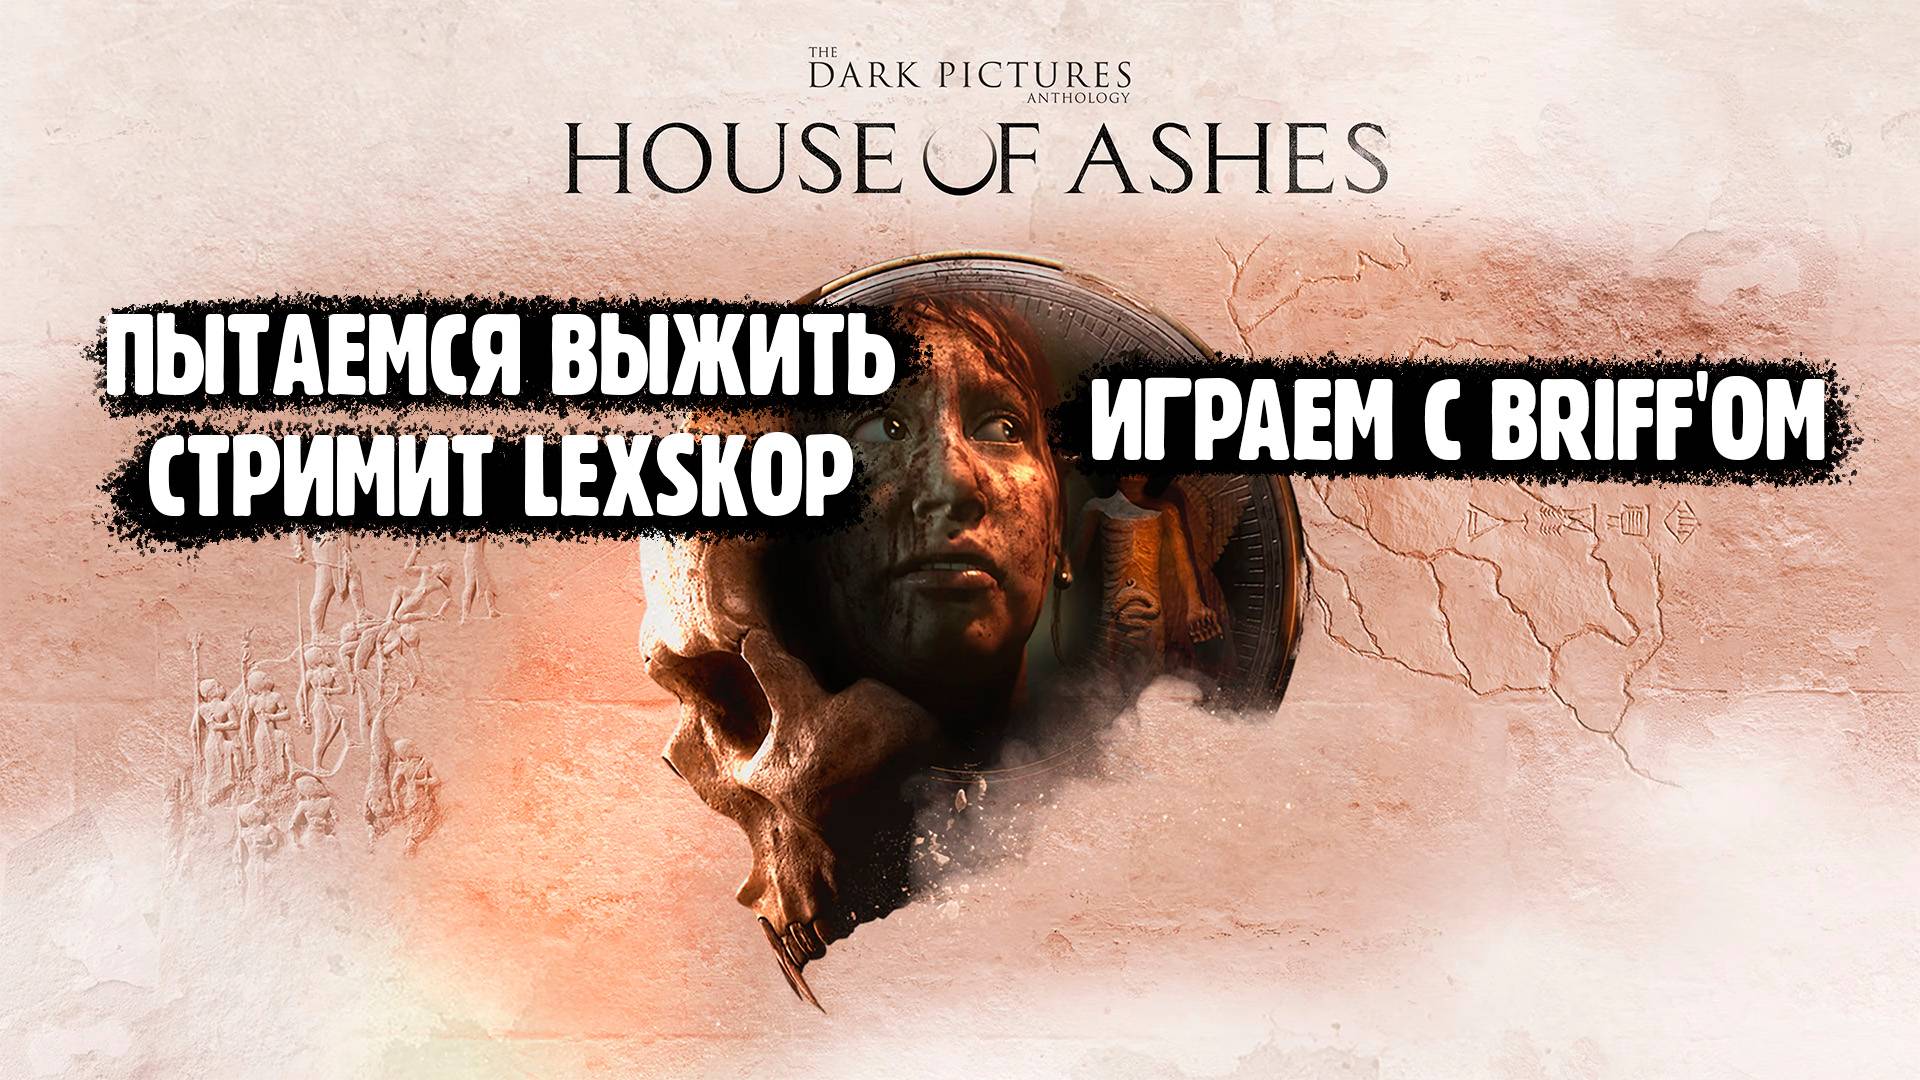 The Dark Pictures Anthology: House of Ashes | Время офигительных историй:) Проходим с @Briff